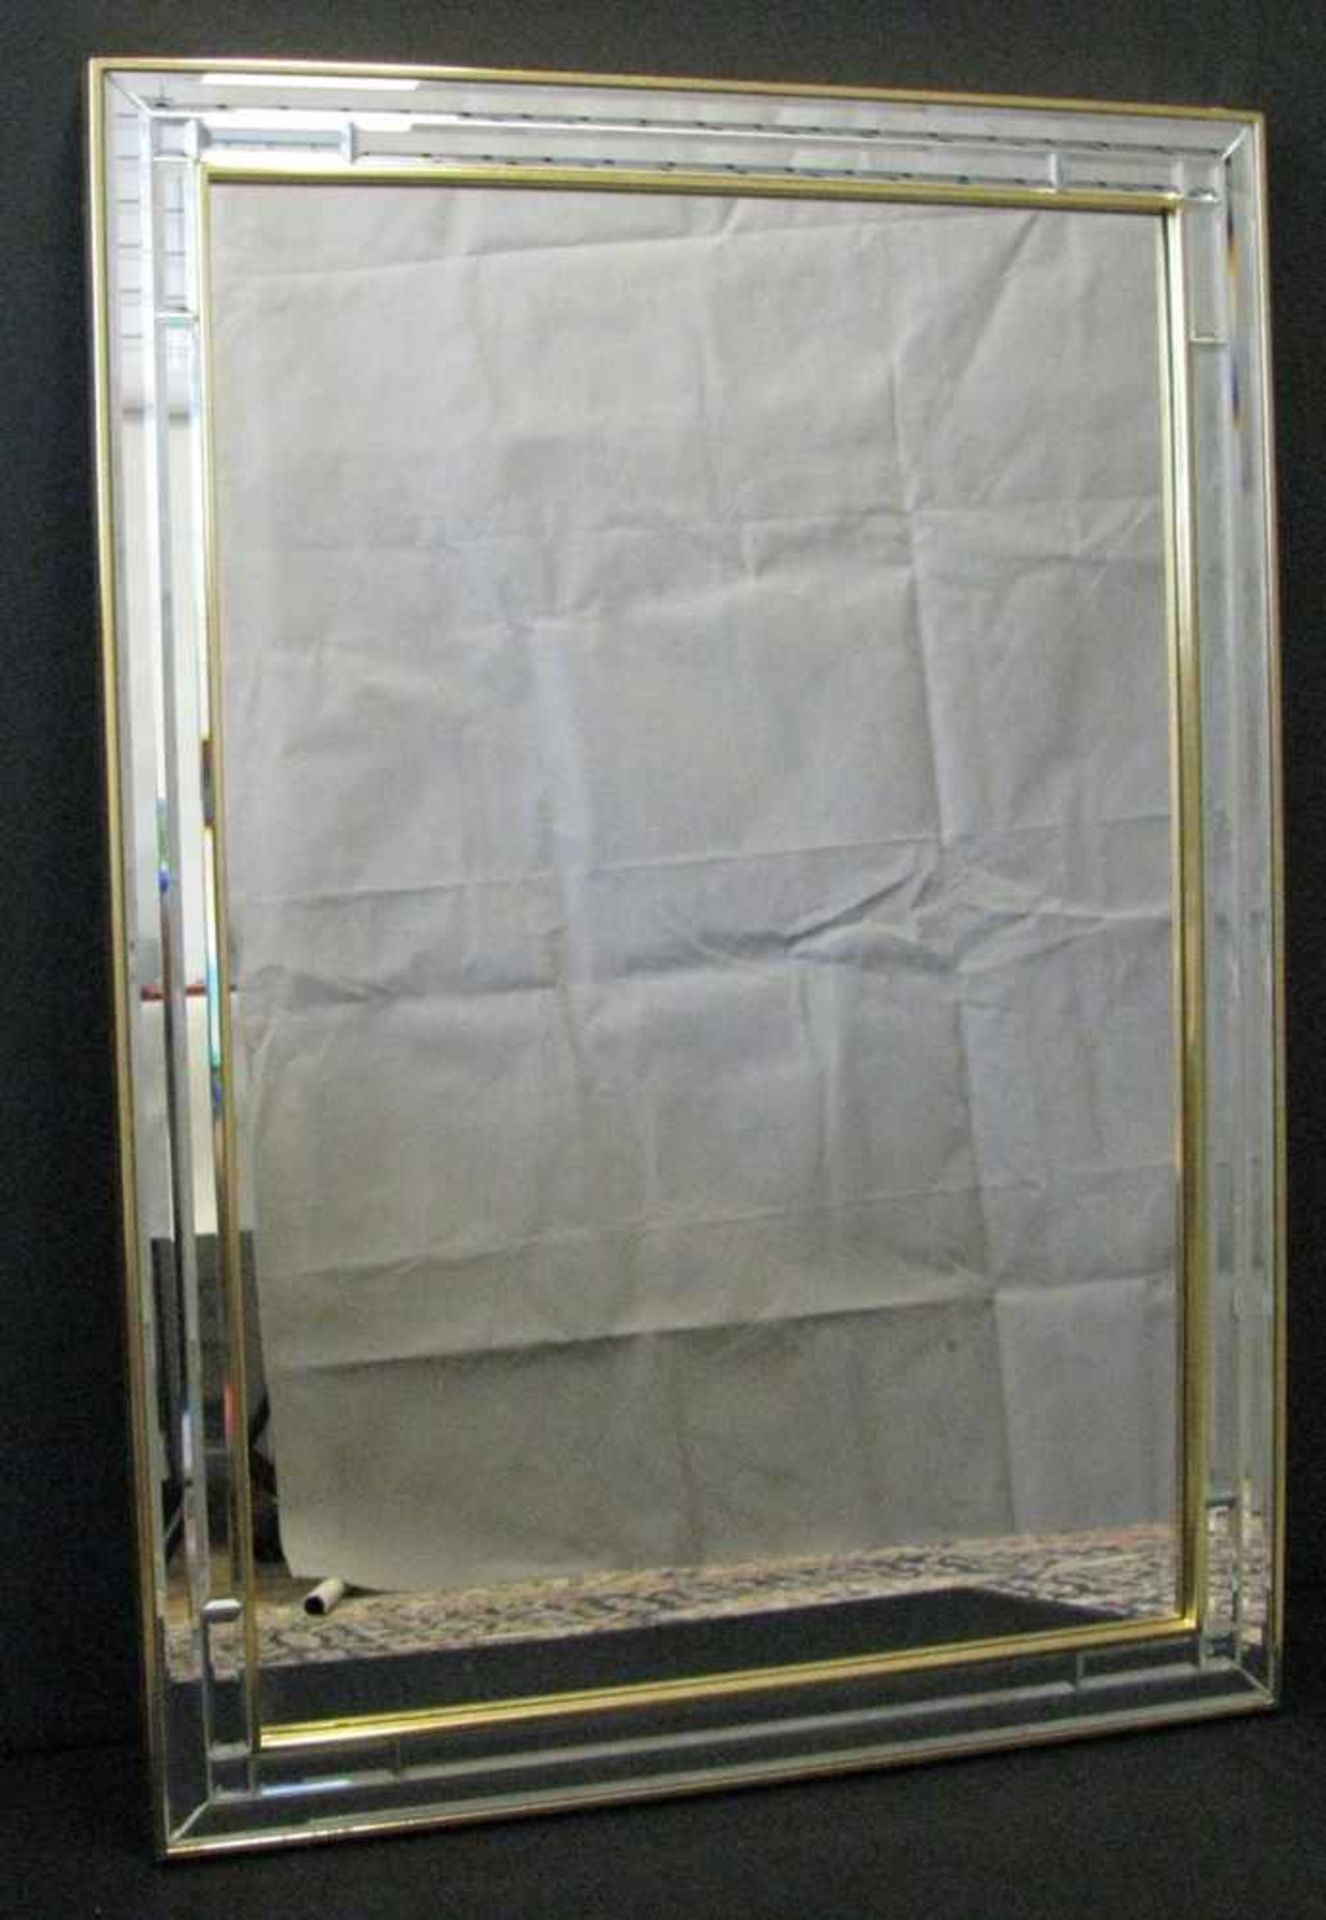 Spiegel mit facettiertem Glas, 1970er Jahre, vergoldet, 95,5 x 68 cm.- - -19.00 % buyer's premium on